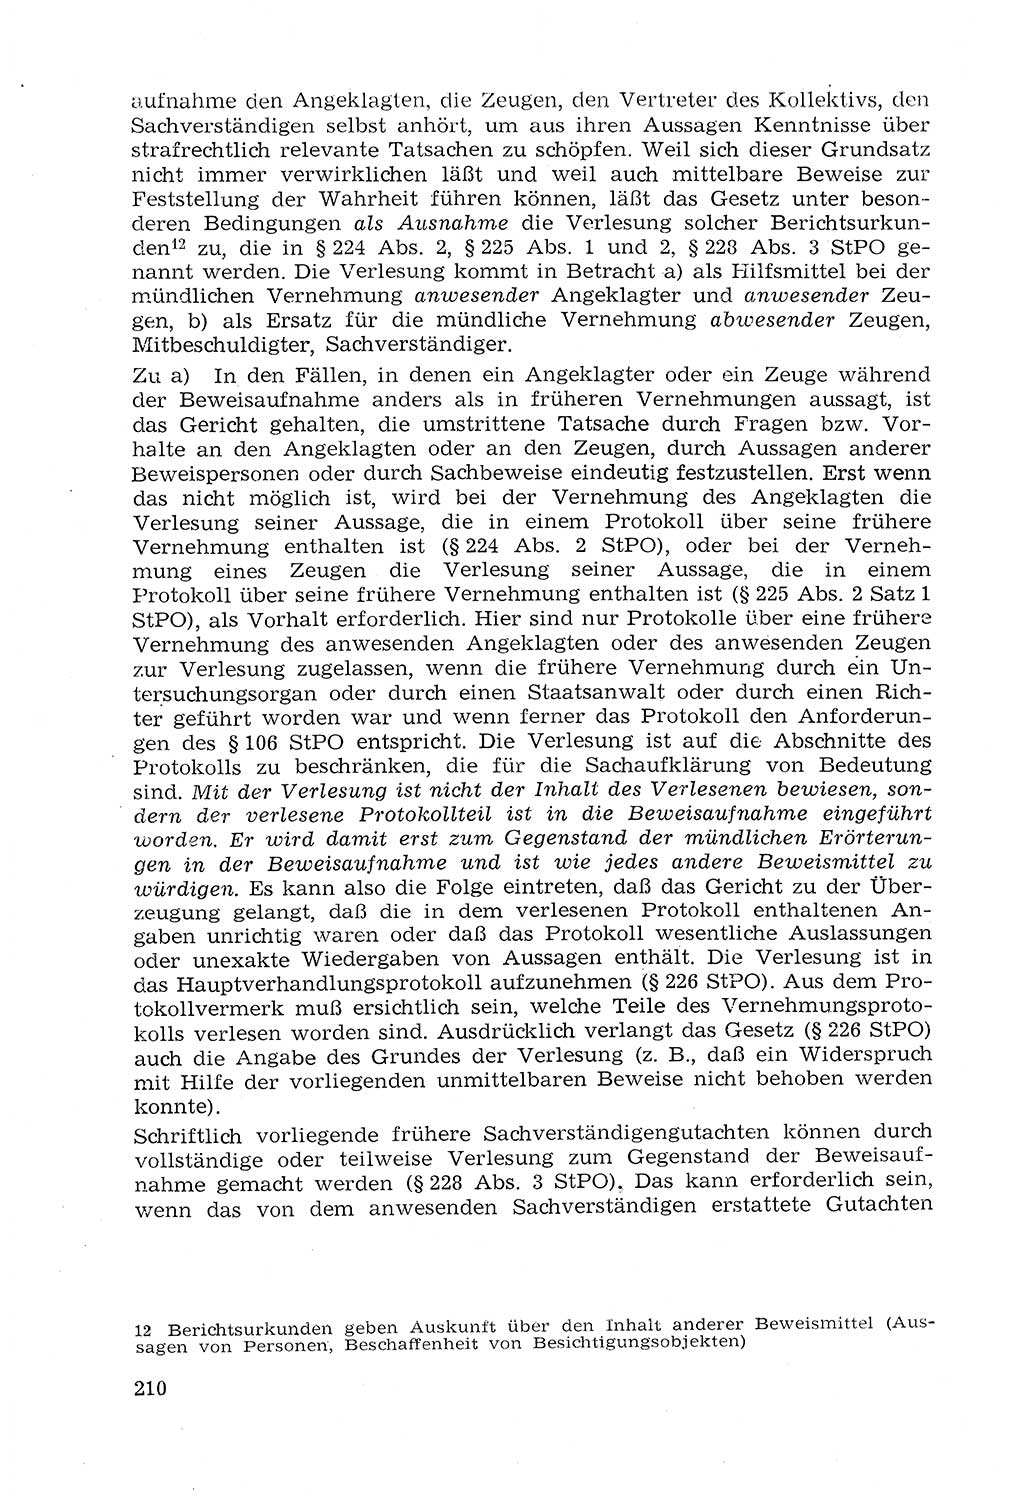 Strafprozeßrecht der DDR (Deutsche Demokratische Republik), Lehrmaterial 1969, Seite 210 (Strafprozeßr. DDR Lehrmat. 1969, S. 210)